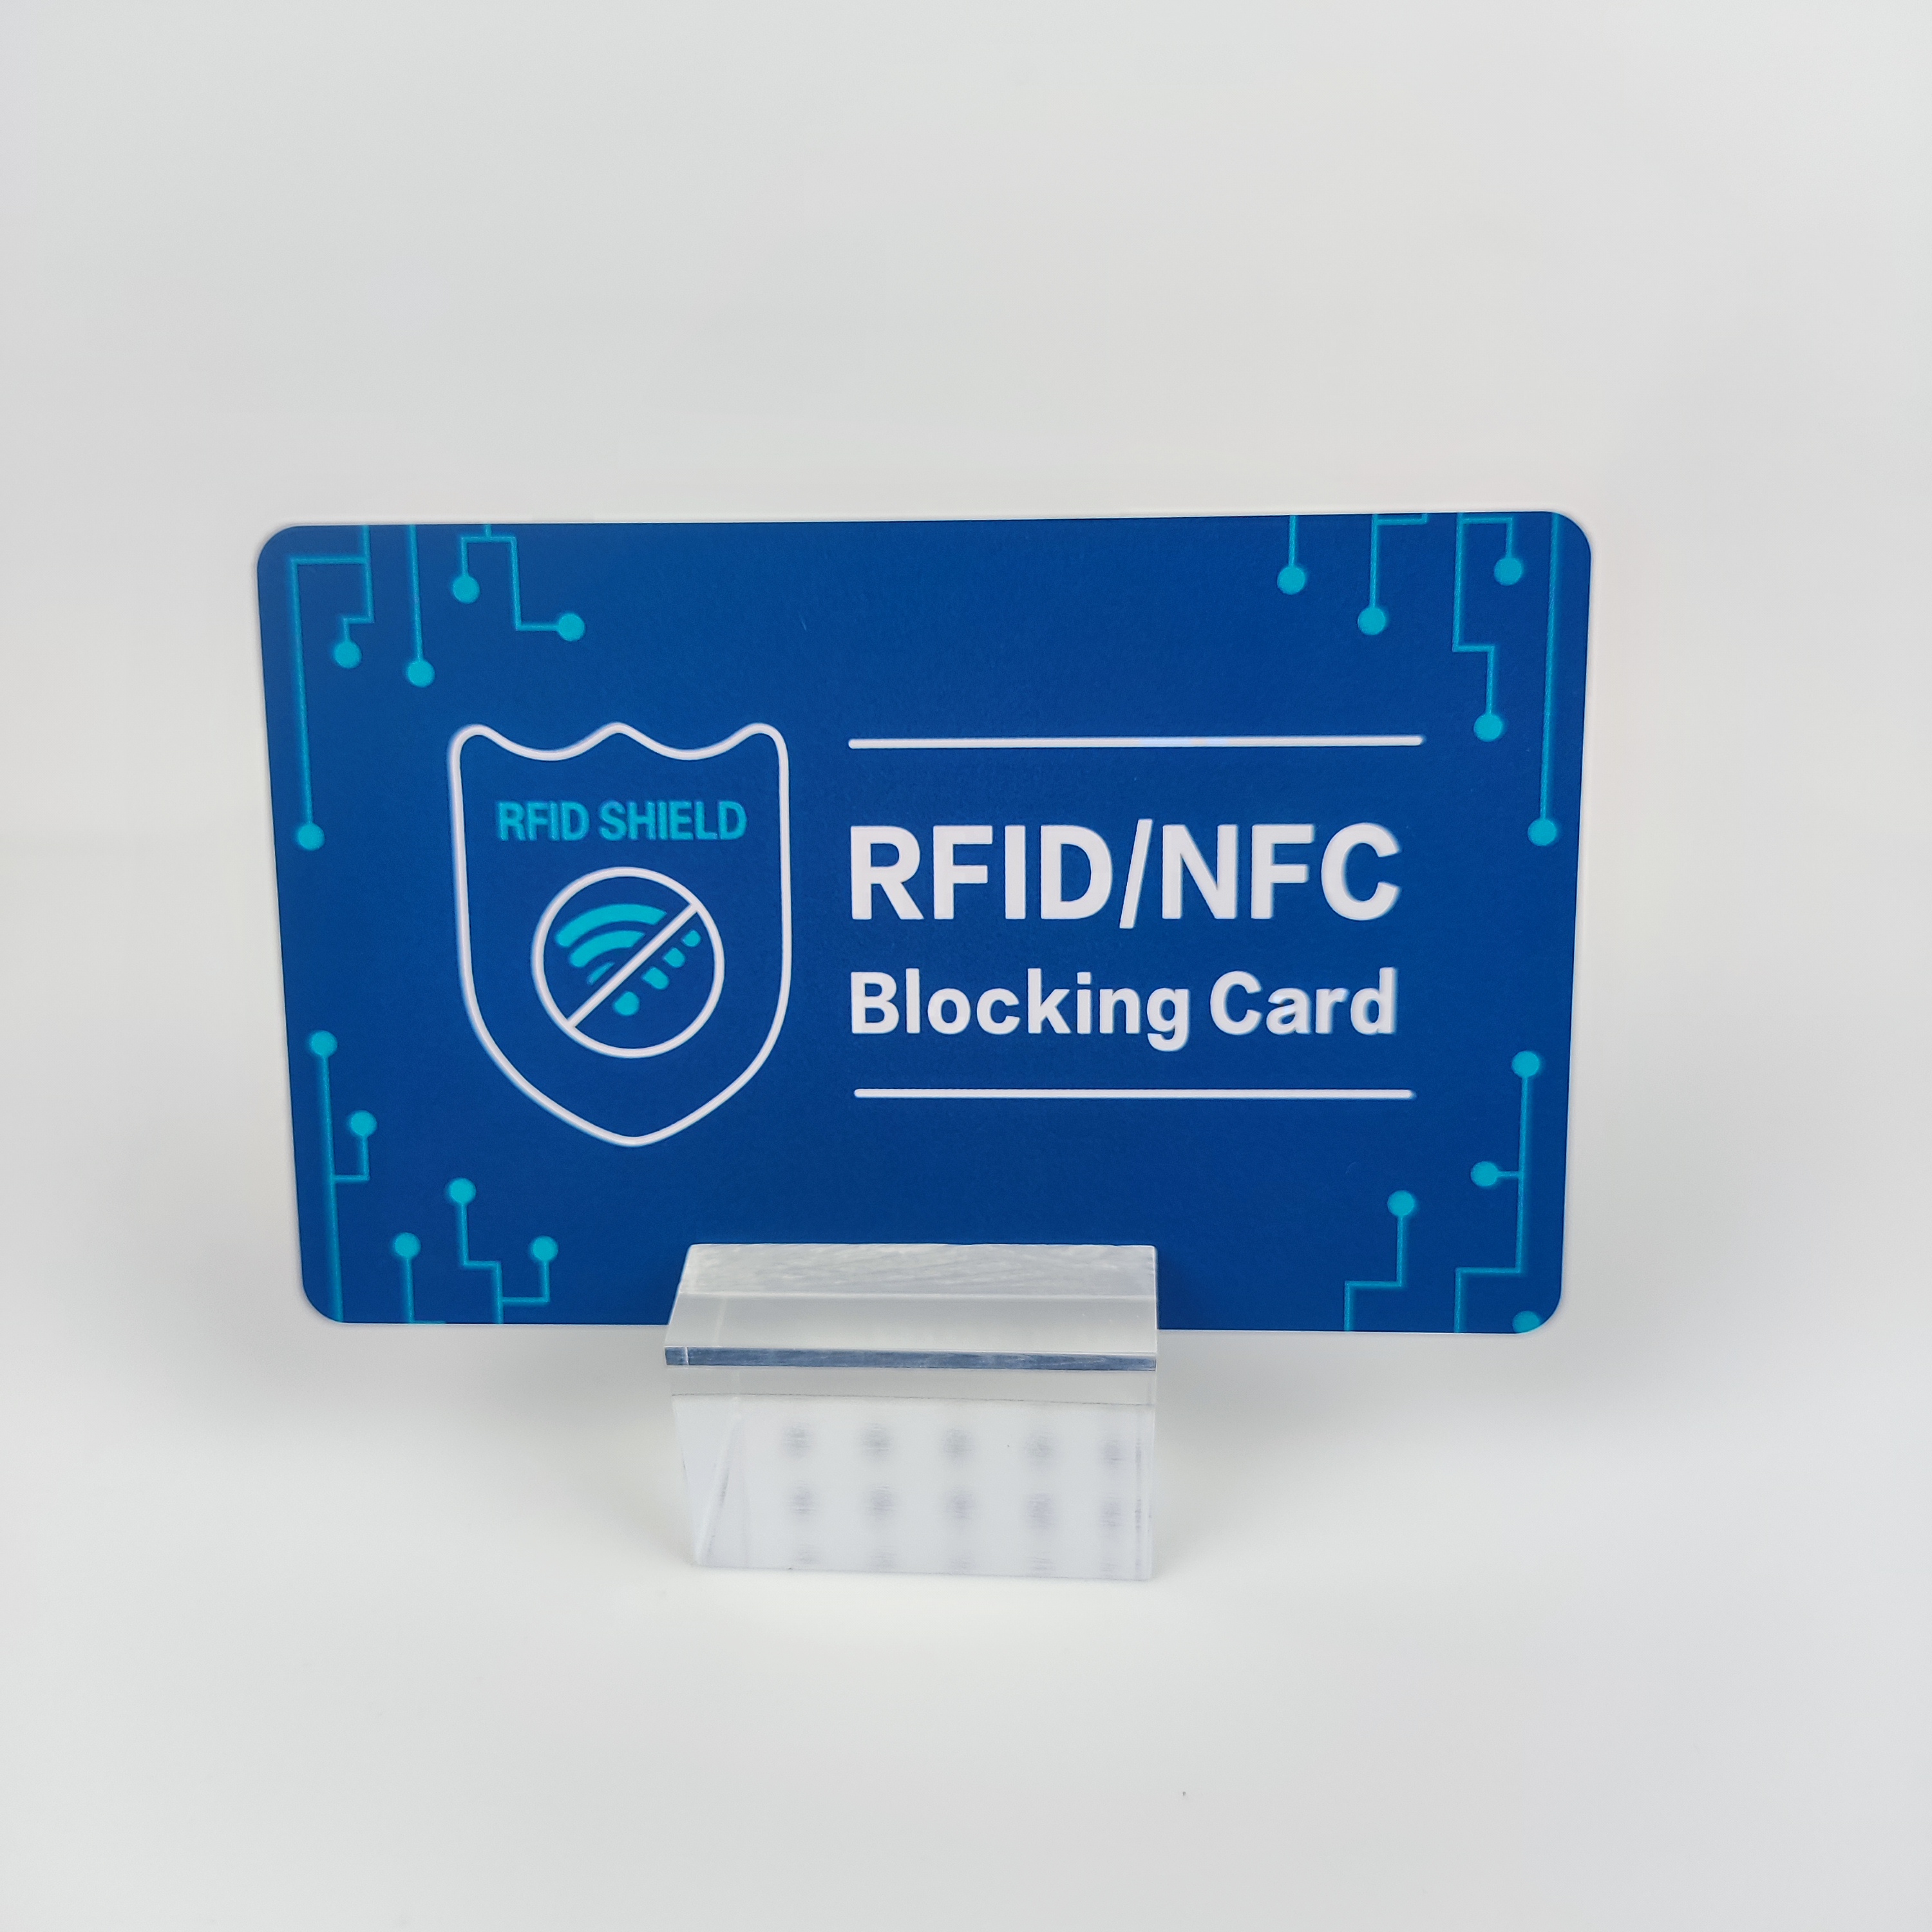 Sichern Sie Ihre Daten mit unserer NFC-Sperrkarte